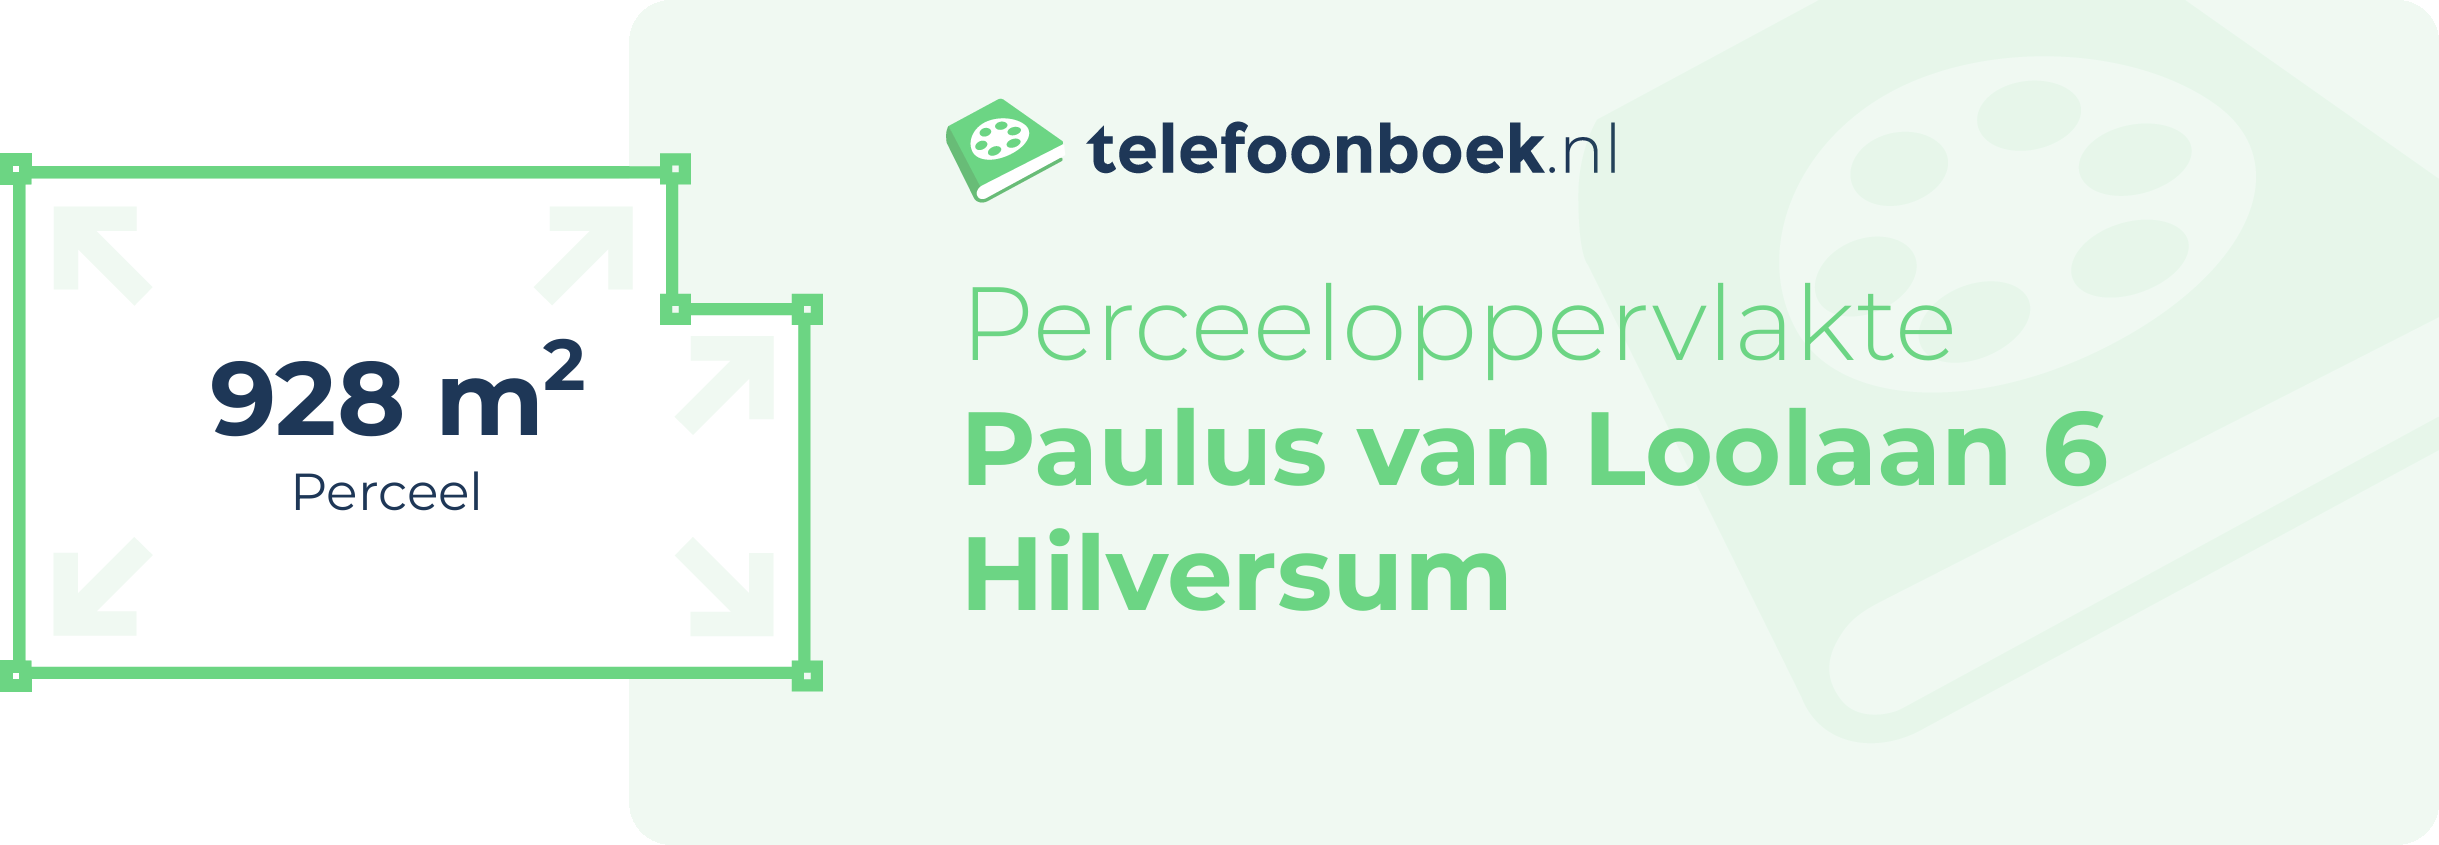 Perceeloppervlakte Paulus Van Loolaan 6 Hilversum